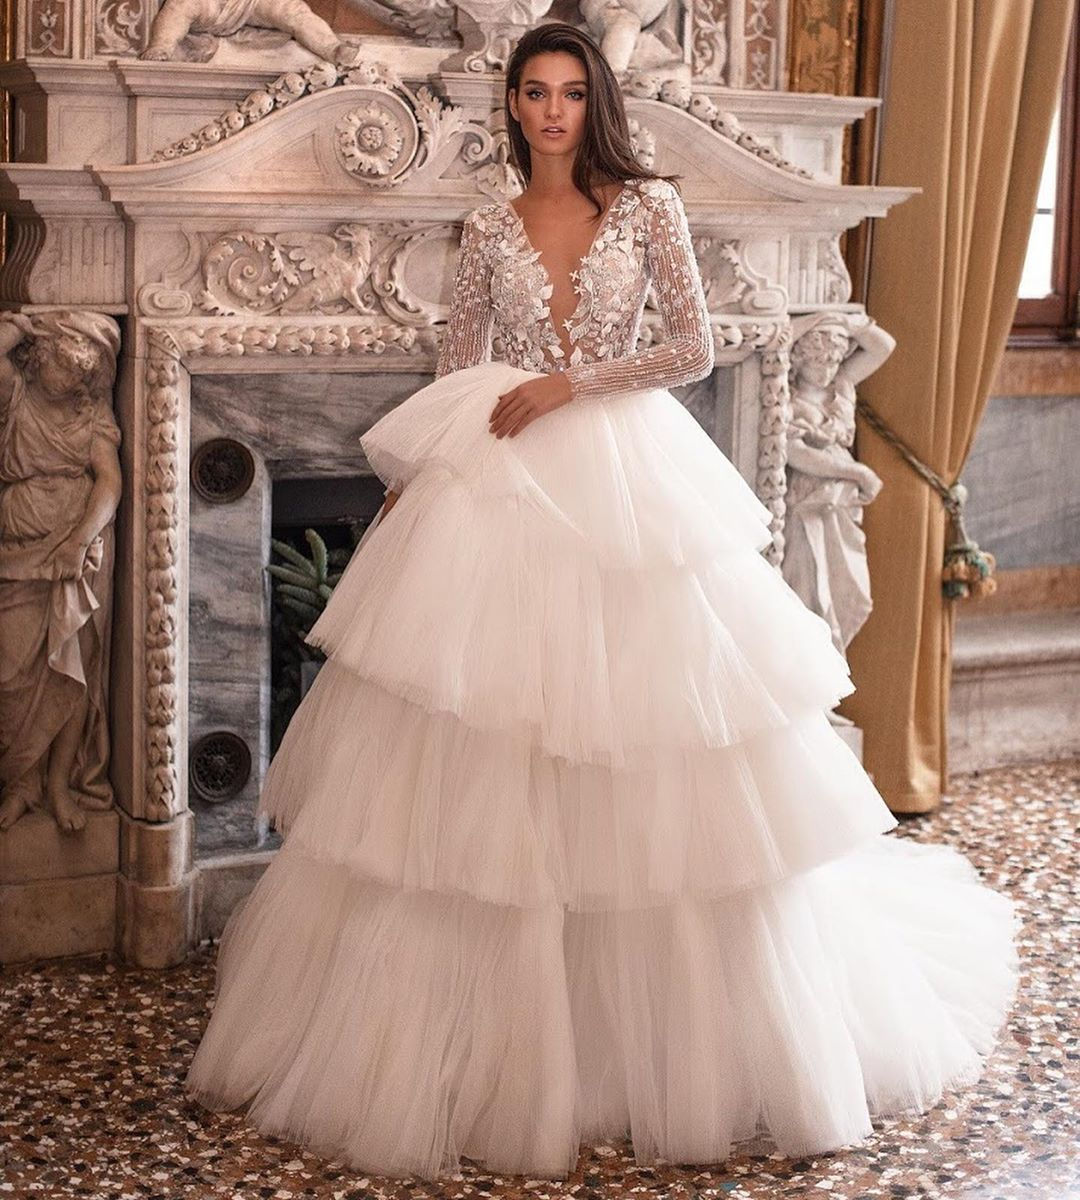 21 chiếc váy cưới có thể biến ngày trọng đại của bạn thành một câu chuyện cổ tích